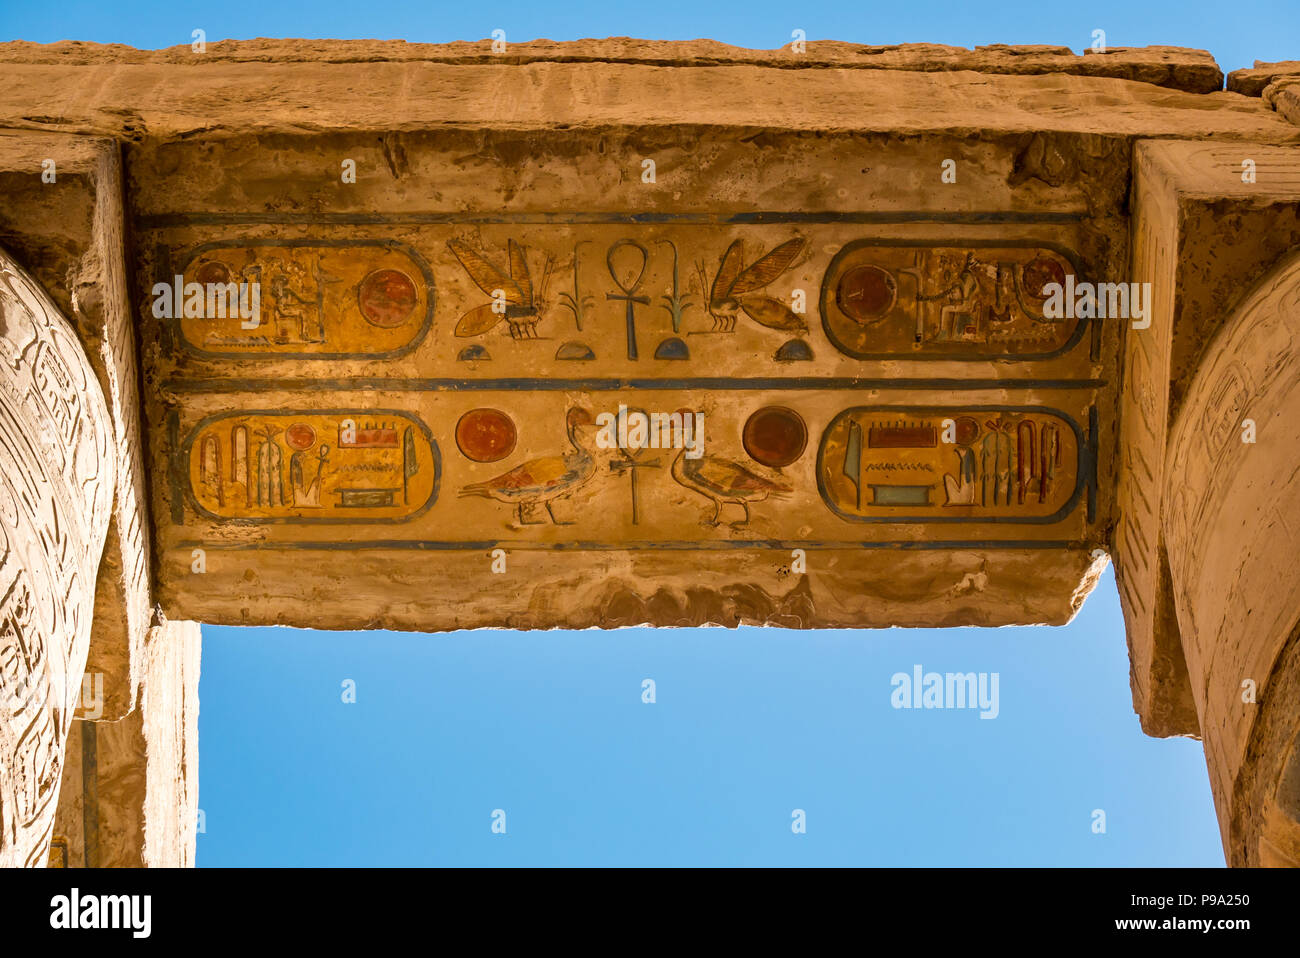 Regardant les hiéroglyphes égyptiens peints colorés en haut de colonnes, salle hypostyle cité parlementaire d'Amon Ra, Temple de Karnak. Louxor, Egypte, Afrique du Sud Banque D'Images